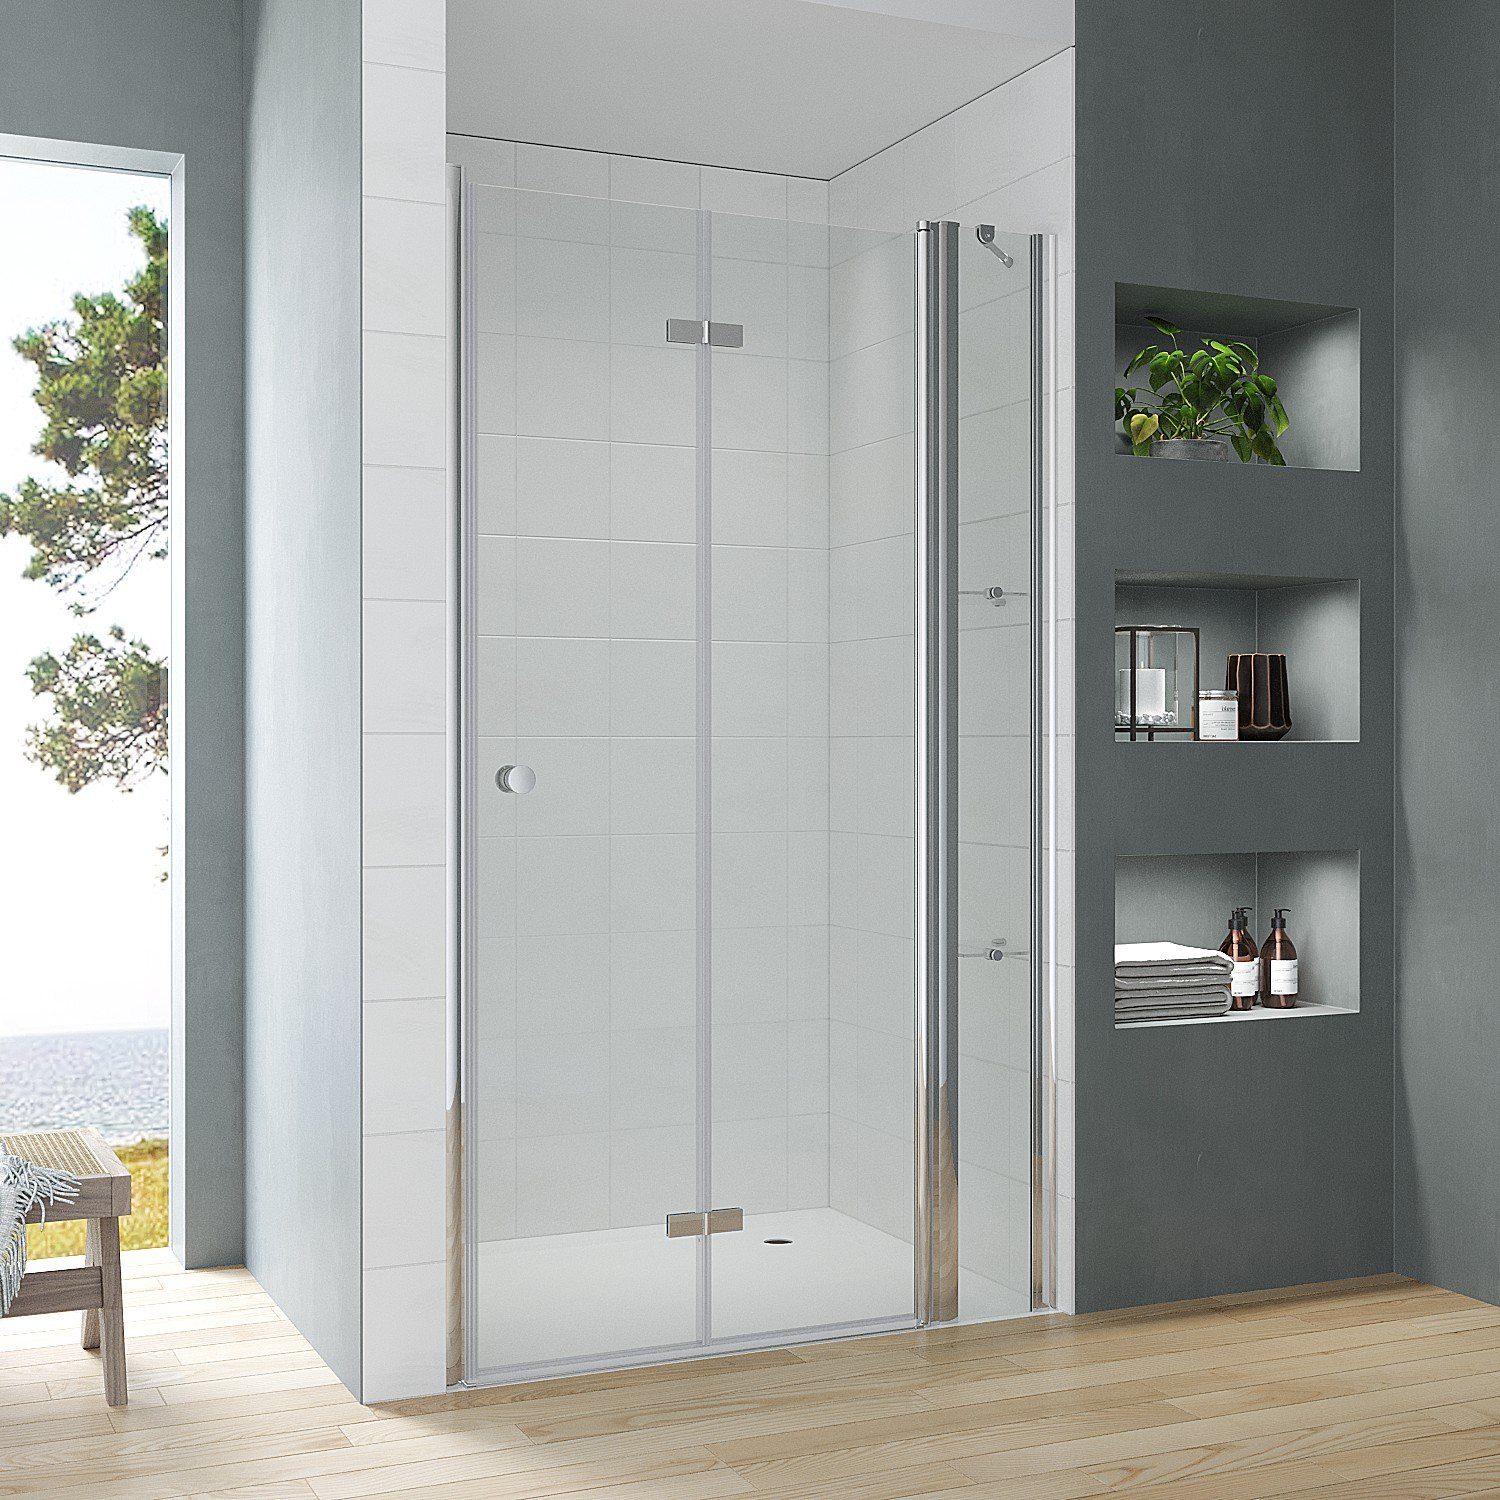 AQUABATOS Dusch-Falttür Begehbare Dusche faltbar Duschtür in Nische mit Festteil Nischentür, 95x187 cm, Einscheiben-Sicherheitsglas (ESG) 5 mm